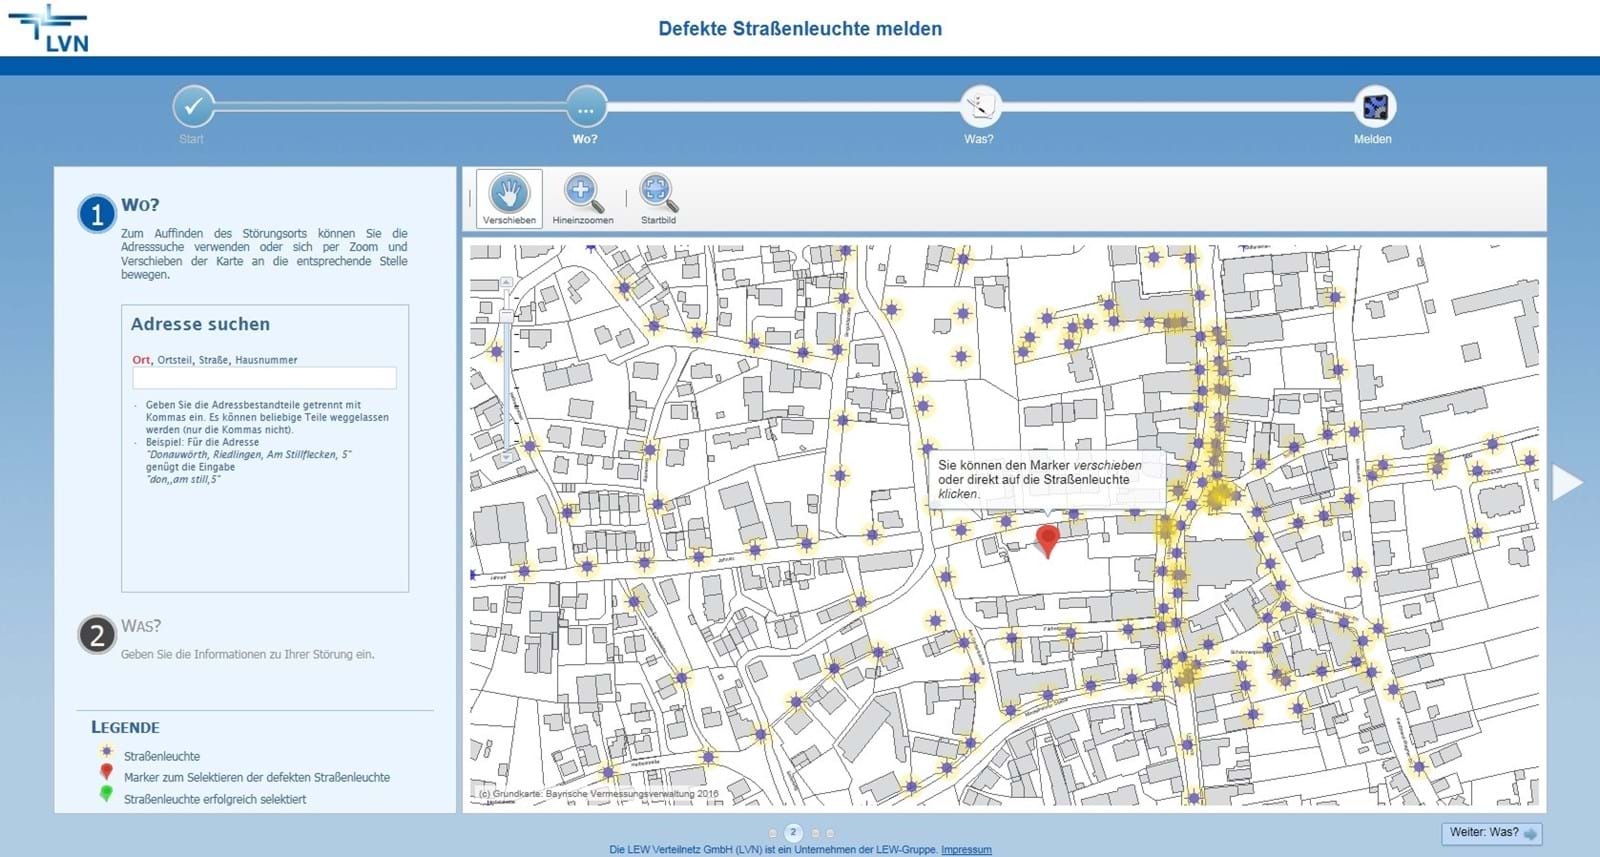 Dieses Online-Tool erleichtert es Kommunen, defekte Straßenleuchten zu ermitteln.